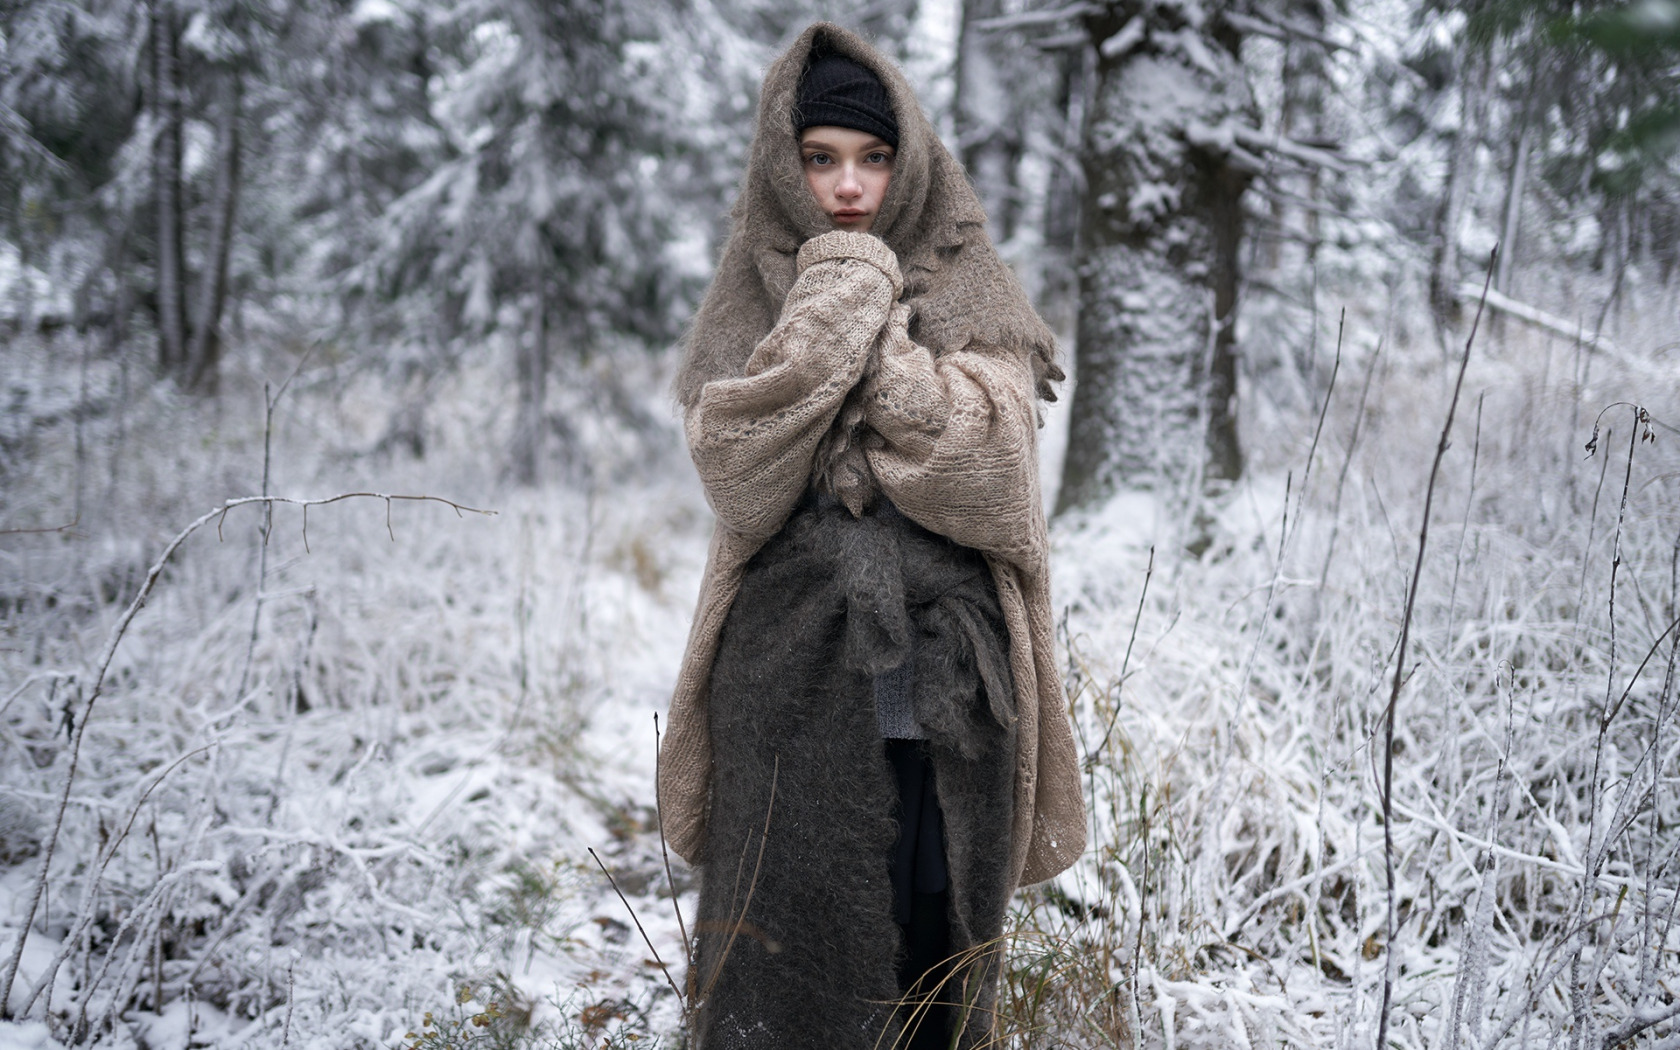 Жительница деревни обнажается в поле зимой